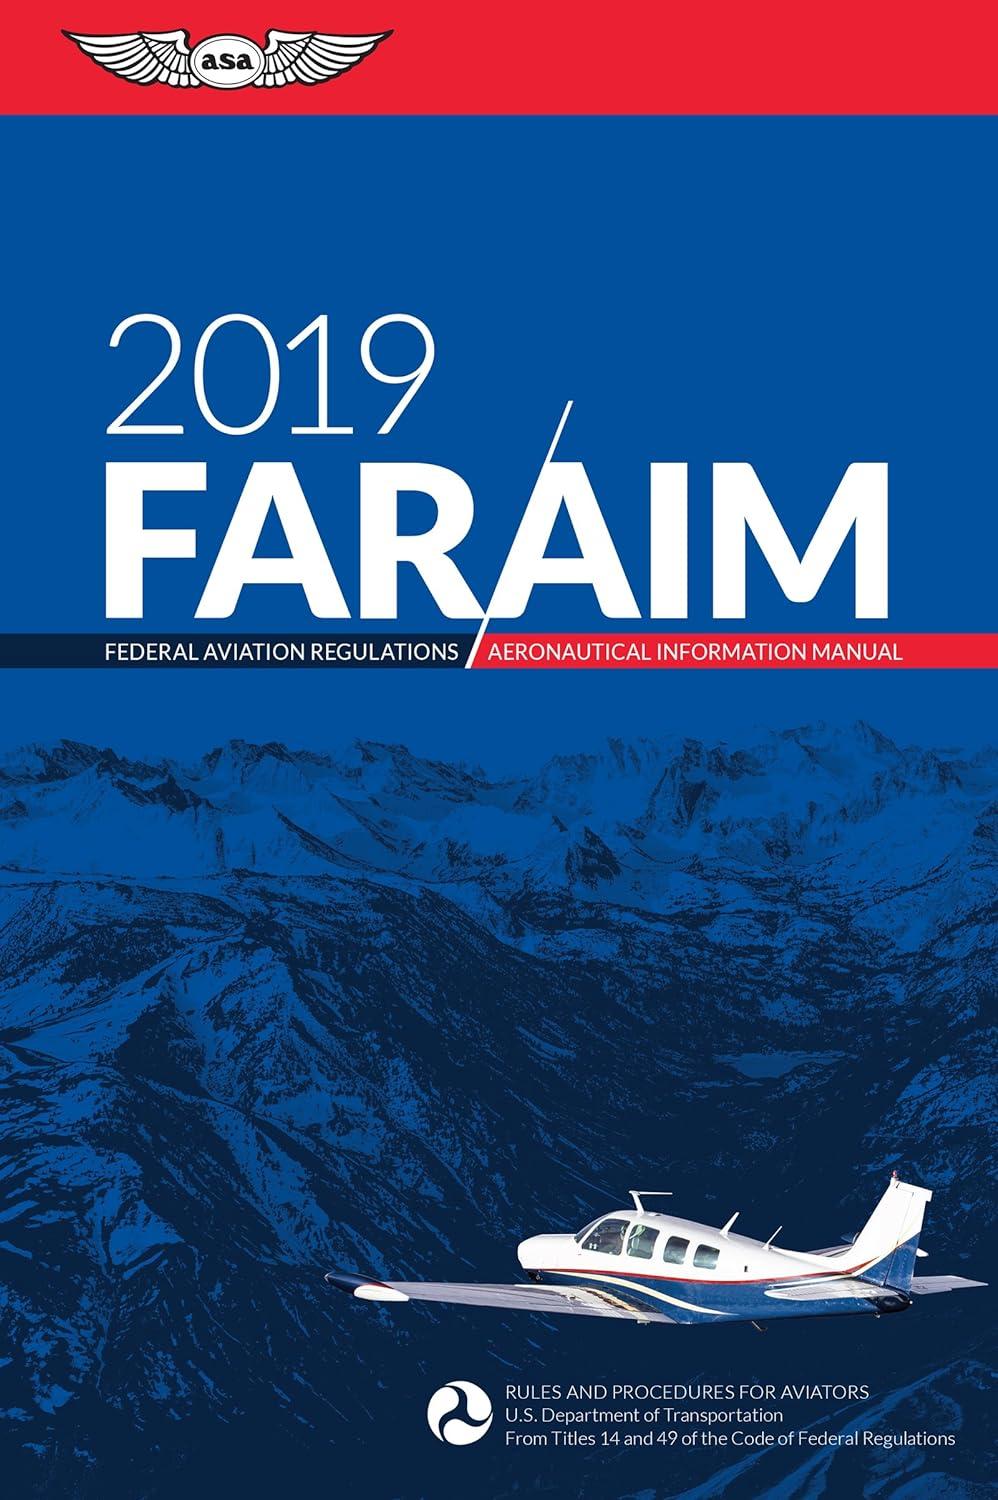 far aim 2019 federal aviation regulations aeronautical information manual 1st edition federal aviation